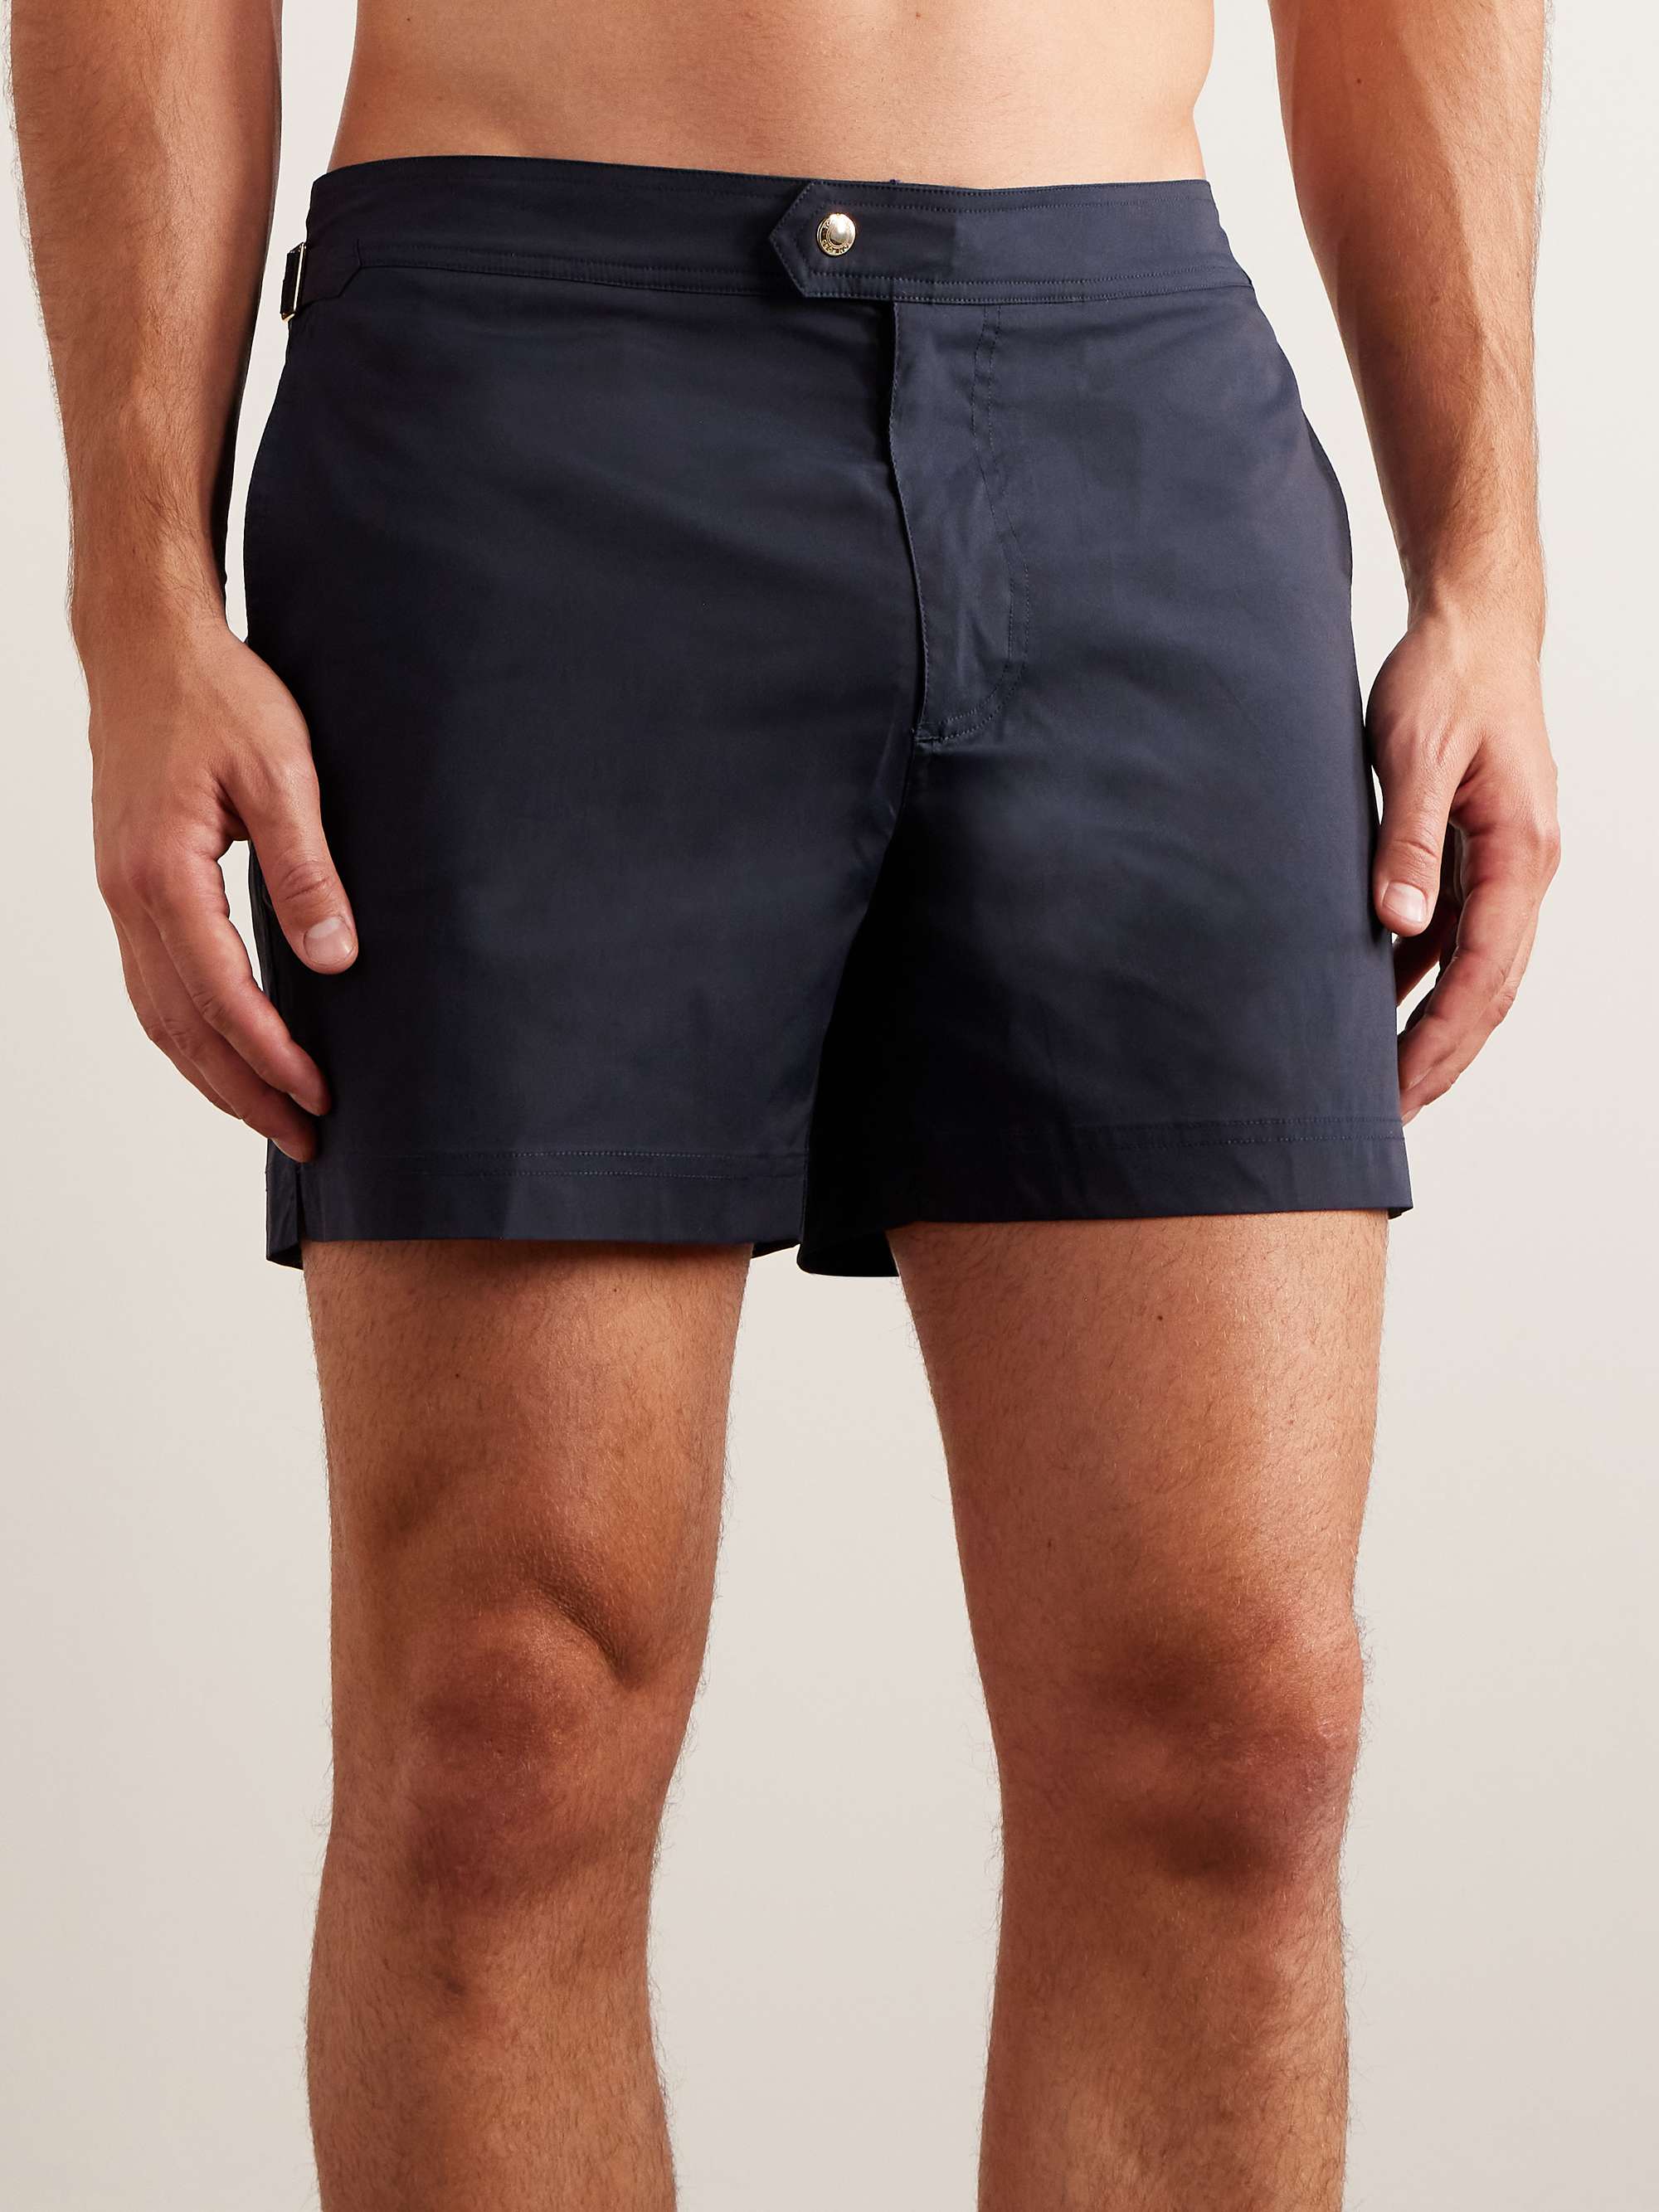 TOM FORD Straight-Leg Short-Length Swim Shorts for Men | MR PORTER